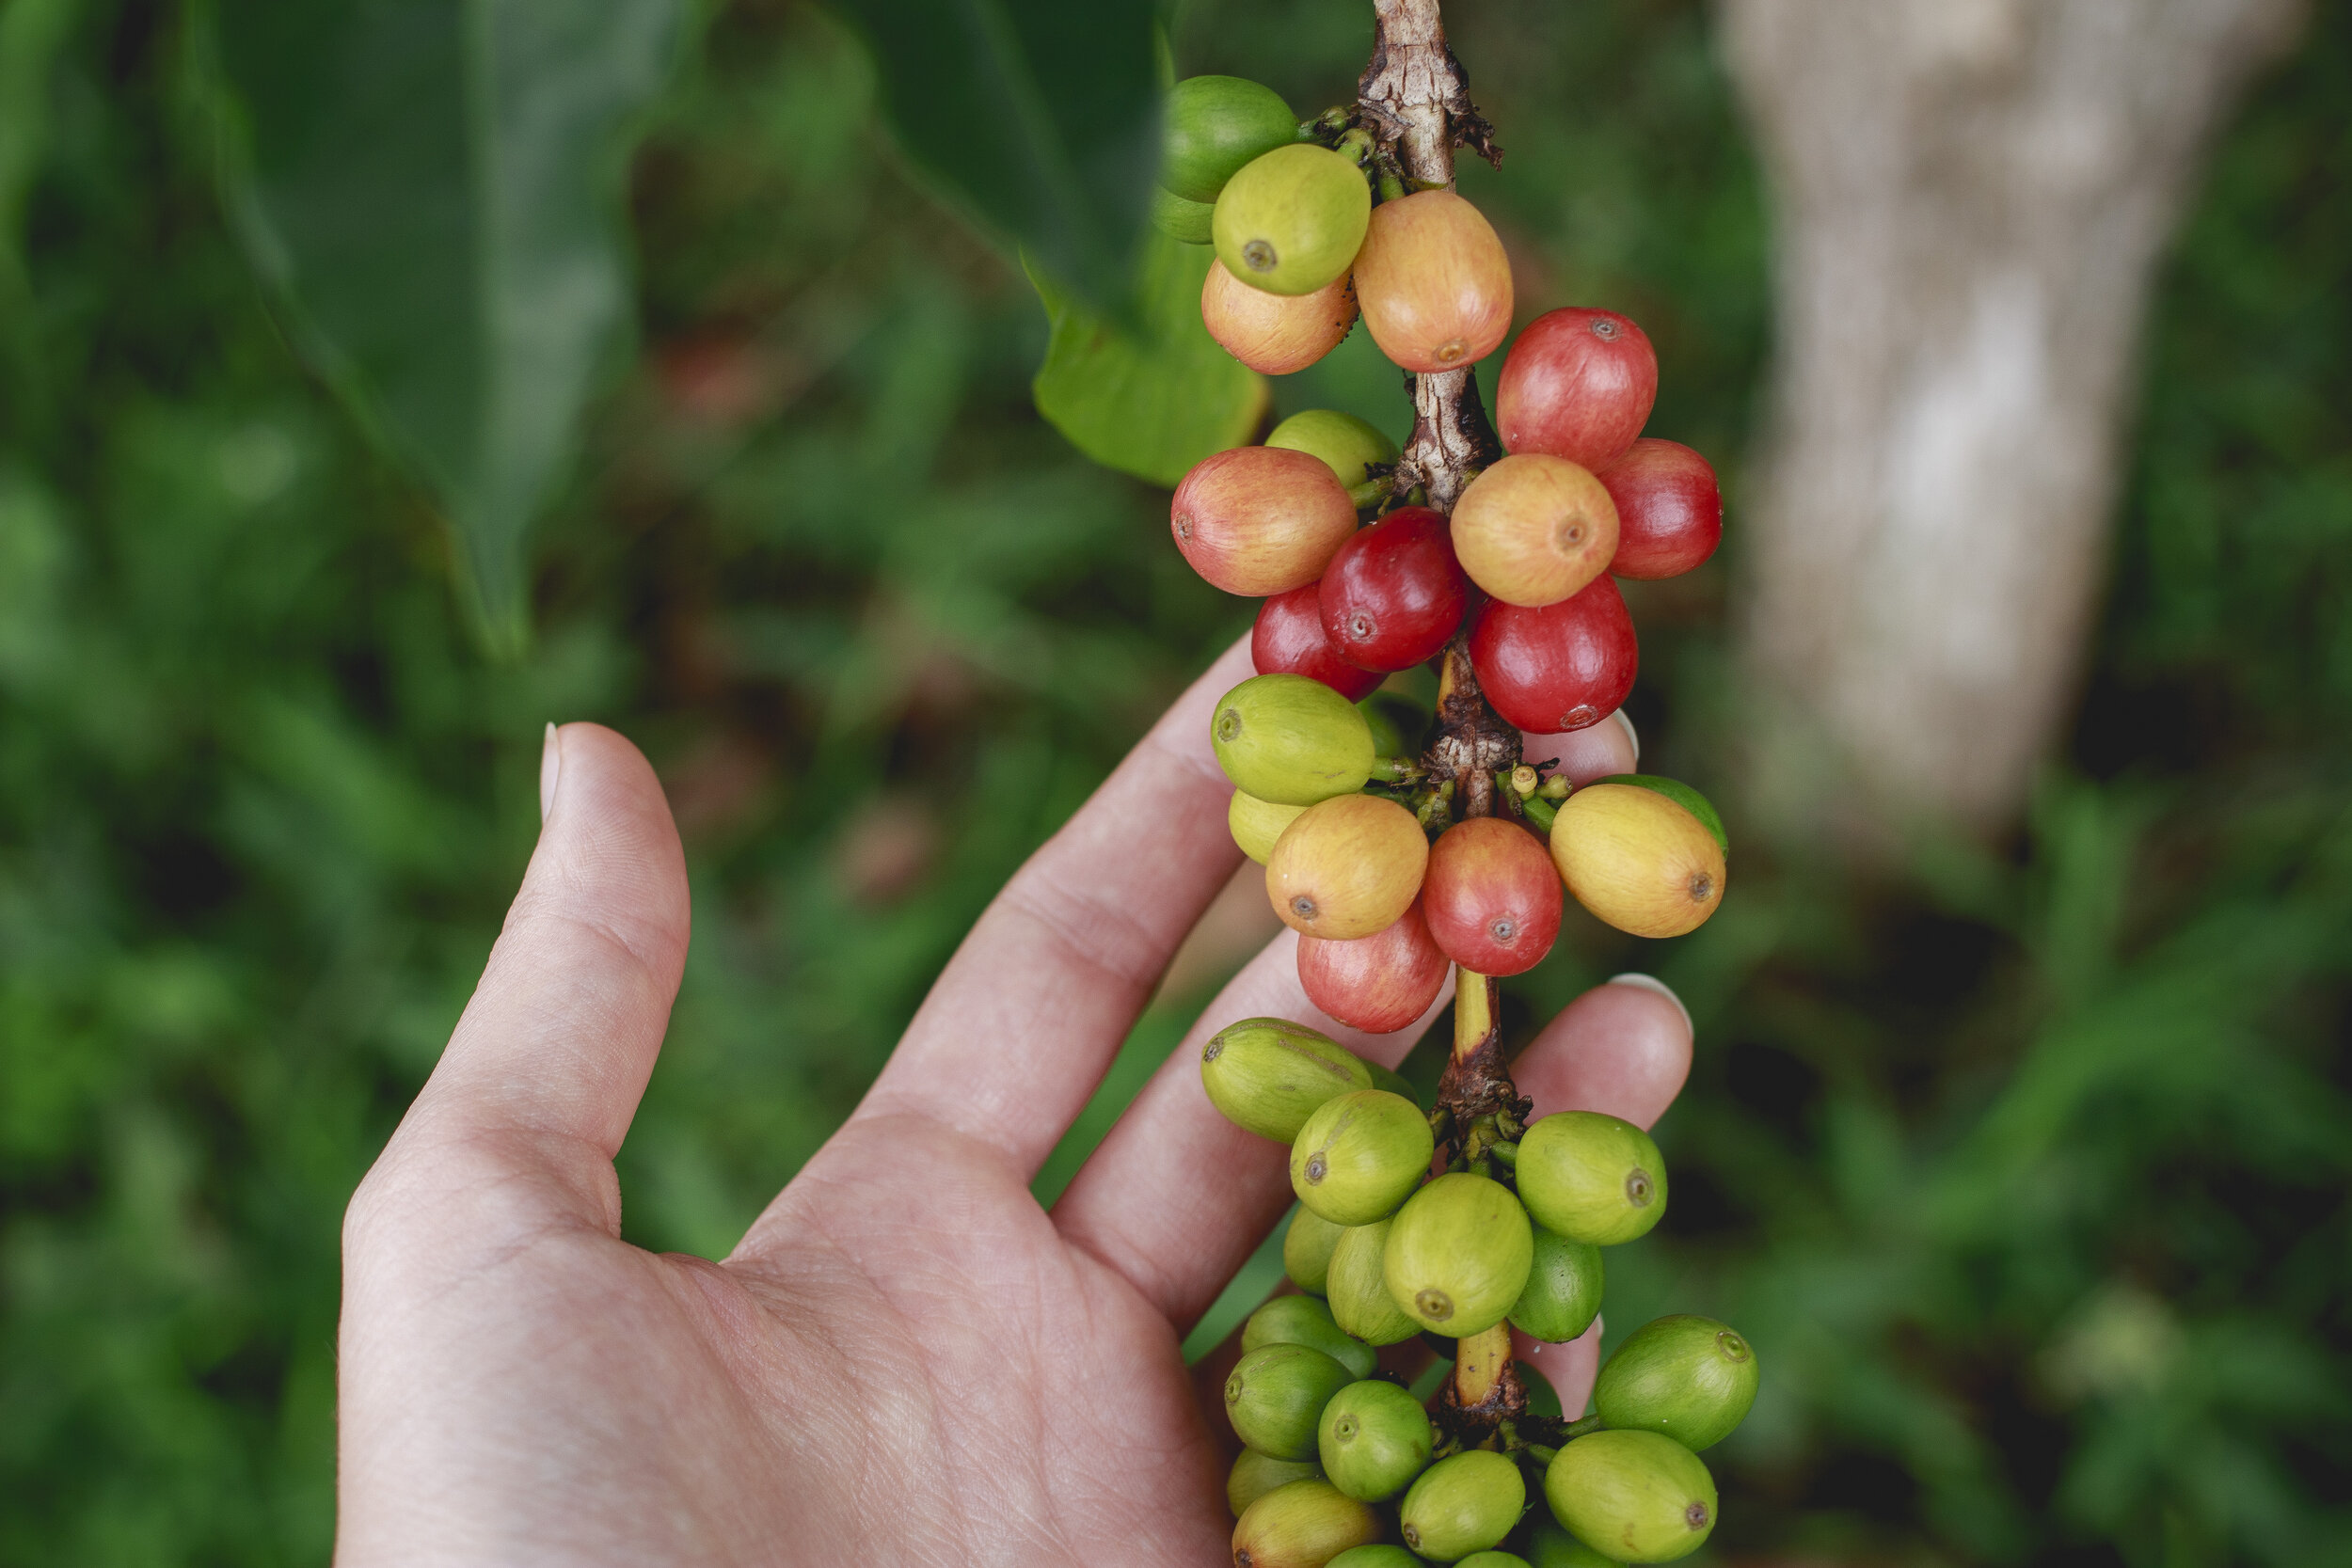 Coffee Beans from Kona, Hawaii